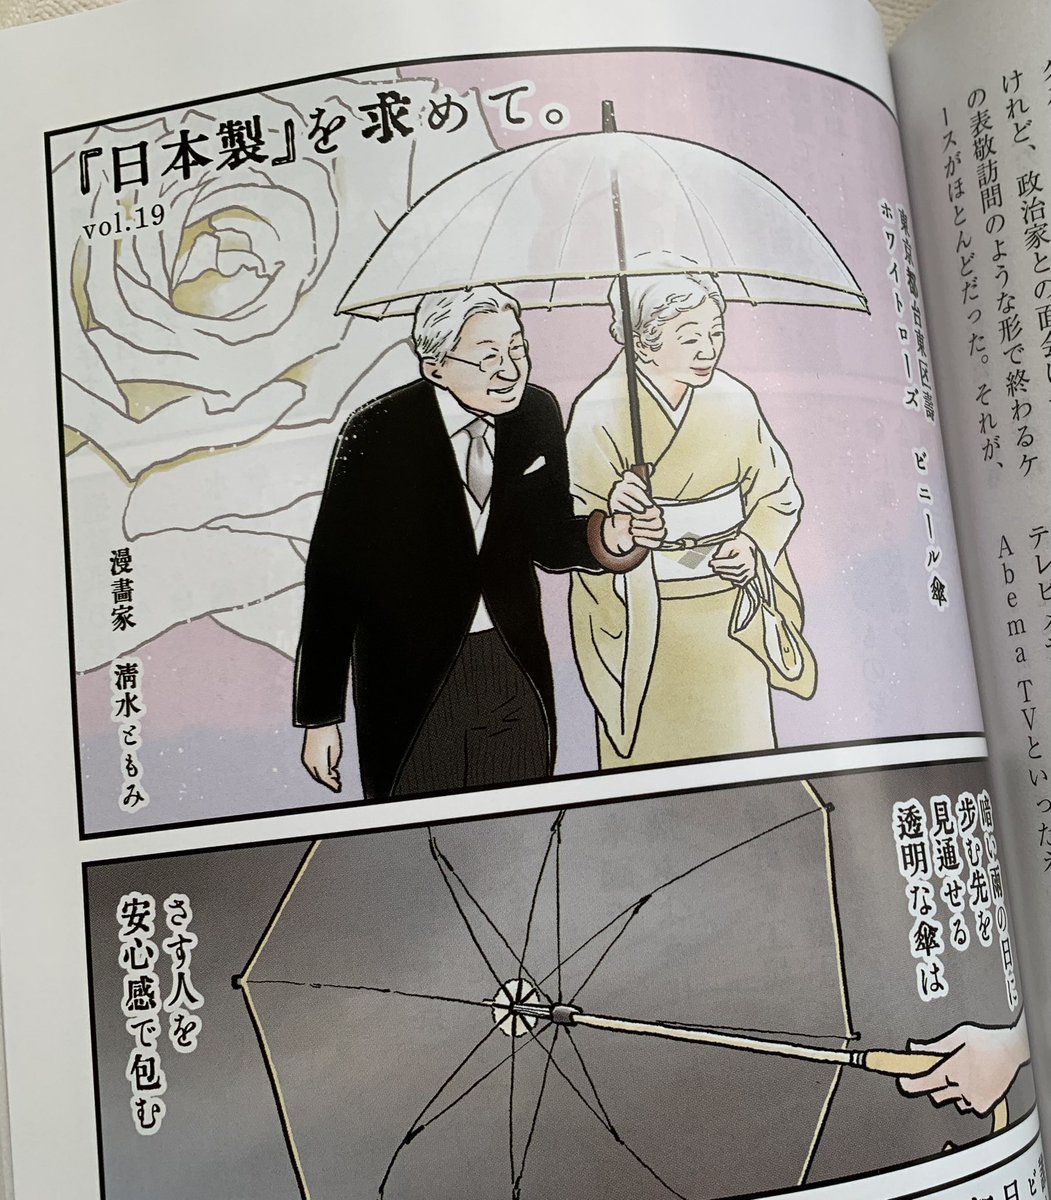 11/1発売📖正論12月号『日本製』を求めて。ちょい見せです🧐知らぬ人はいないビニール傘☂️日本発祥であること、ご存知でしたか。使い捨てるためのものづくりをするはずがない。丈夫な日本製ビニール傘を発明し、今も作り続ける「ホワイトローズ」様の取り組みをご紹介しています。ぜひご覧下さい。 